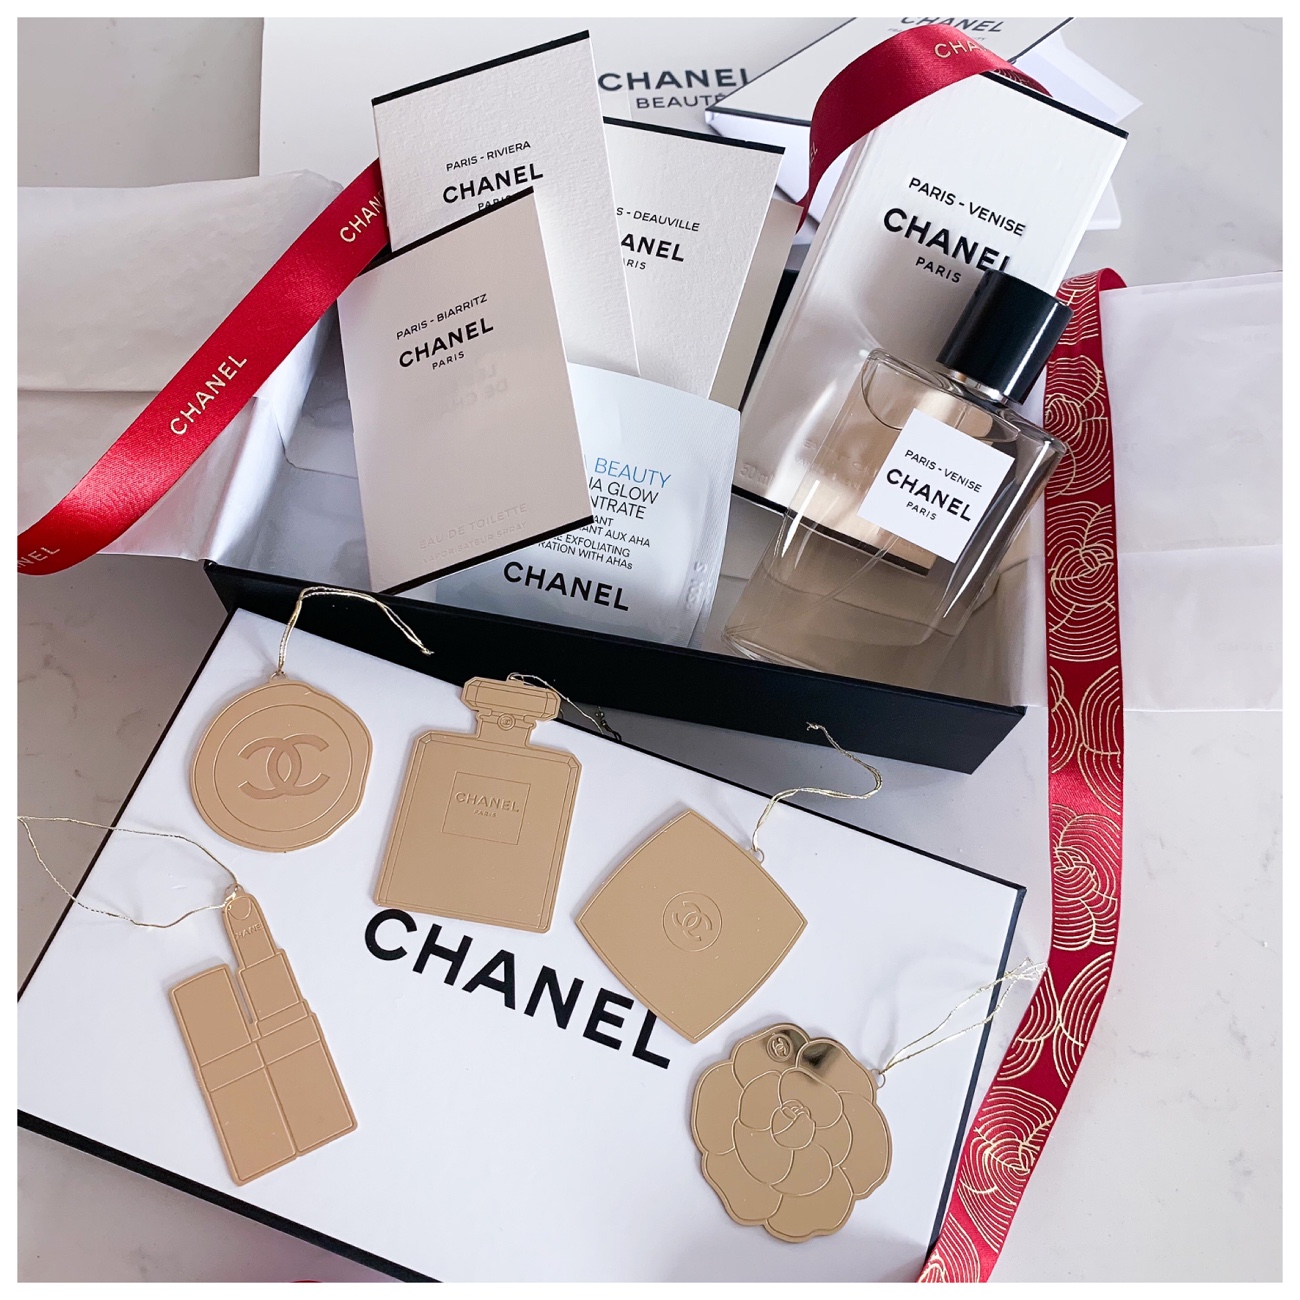 Les Eaux de Chanel - Paris Venise